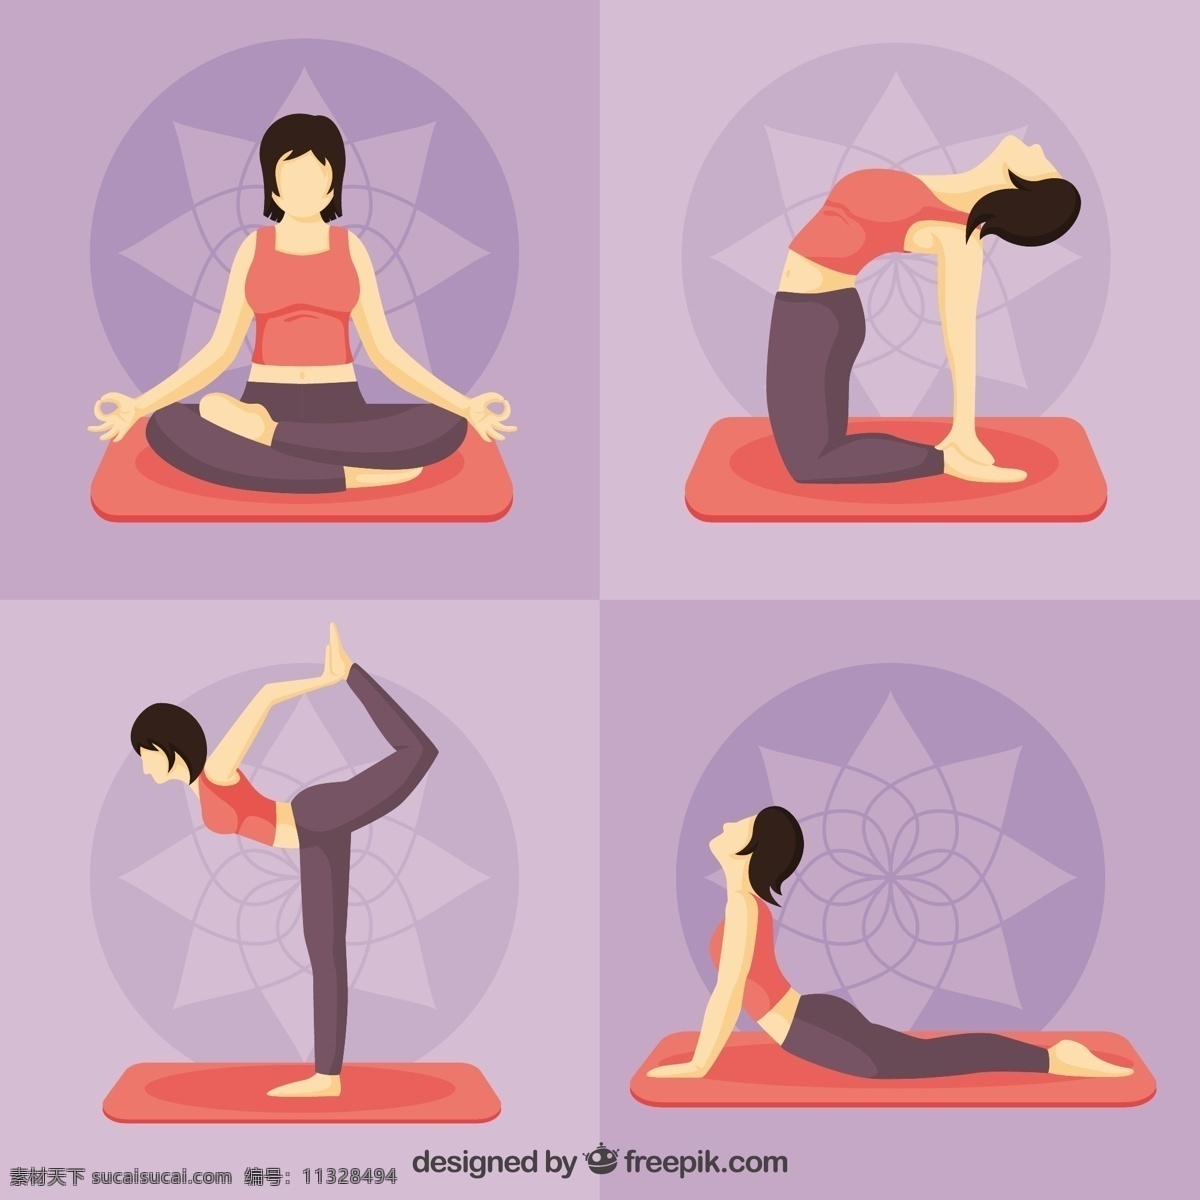 女子 做 瑜伽 姿势 设定 手 健康 手画 可爱 人 颜色 和平 运动 平衡 精神 人体 放松 生活方式 制定 设置 位置 紫色